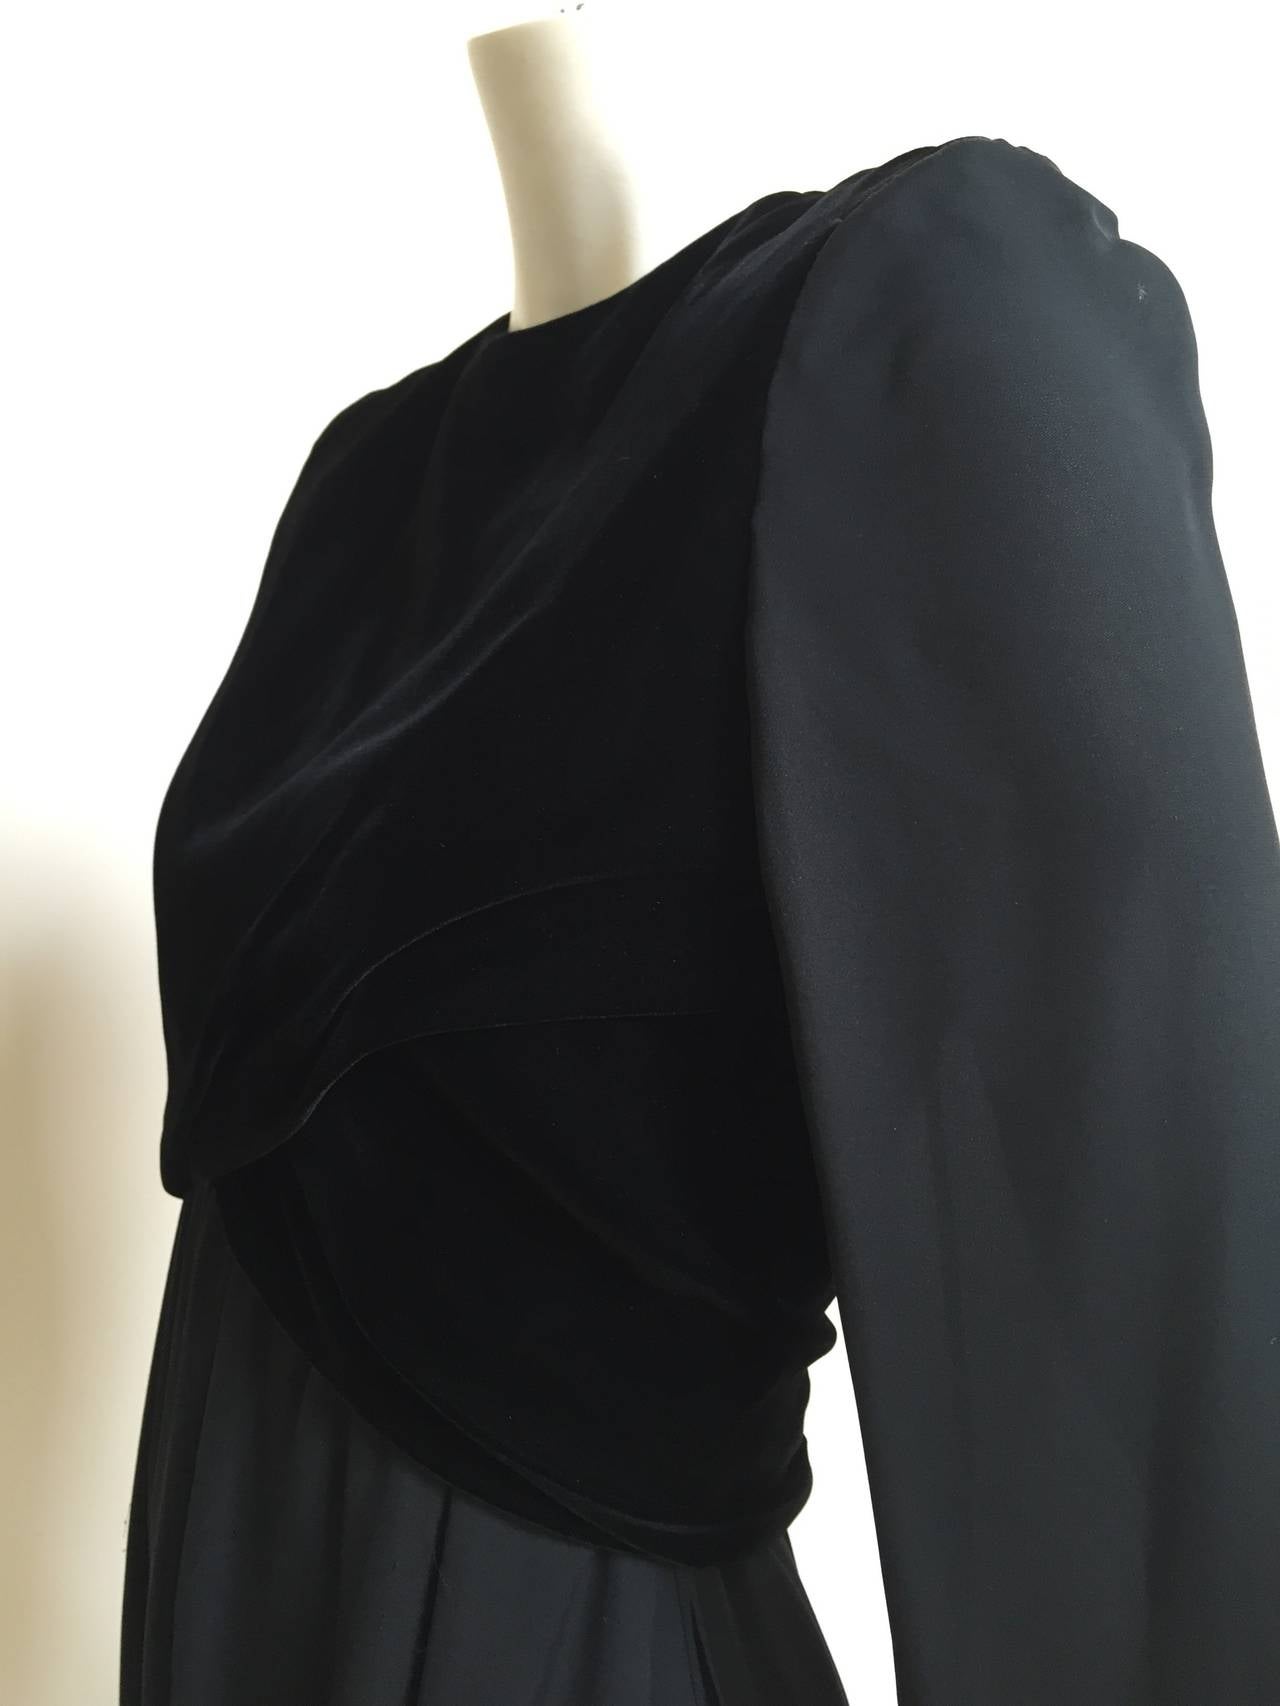 Bill Blass for Saks 1980s Black Chiffon & Velvet Evening Dress Size 4/6. For Sale 4